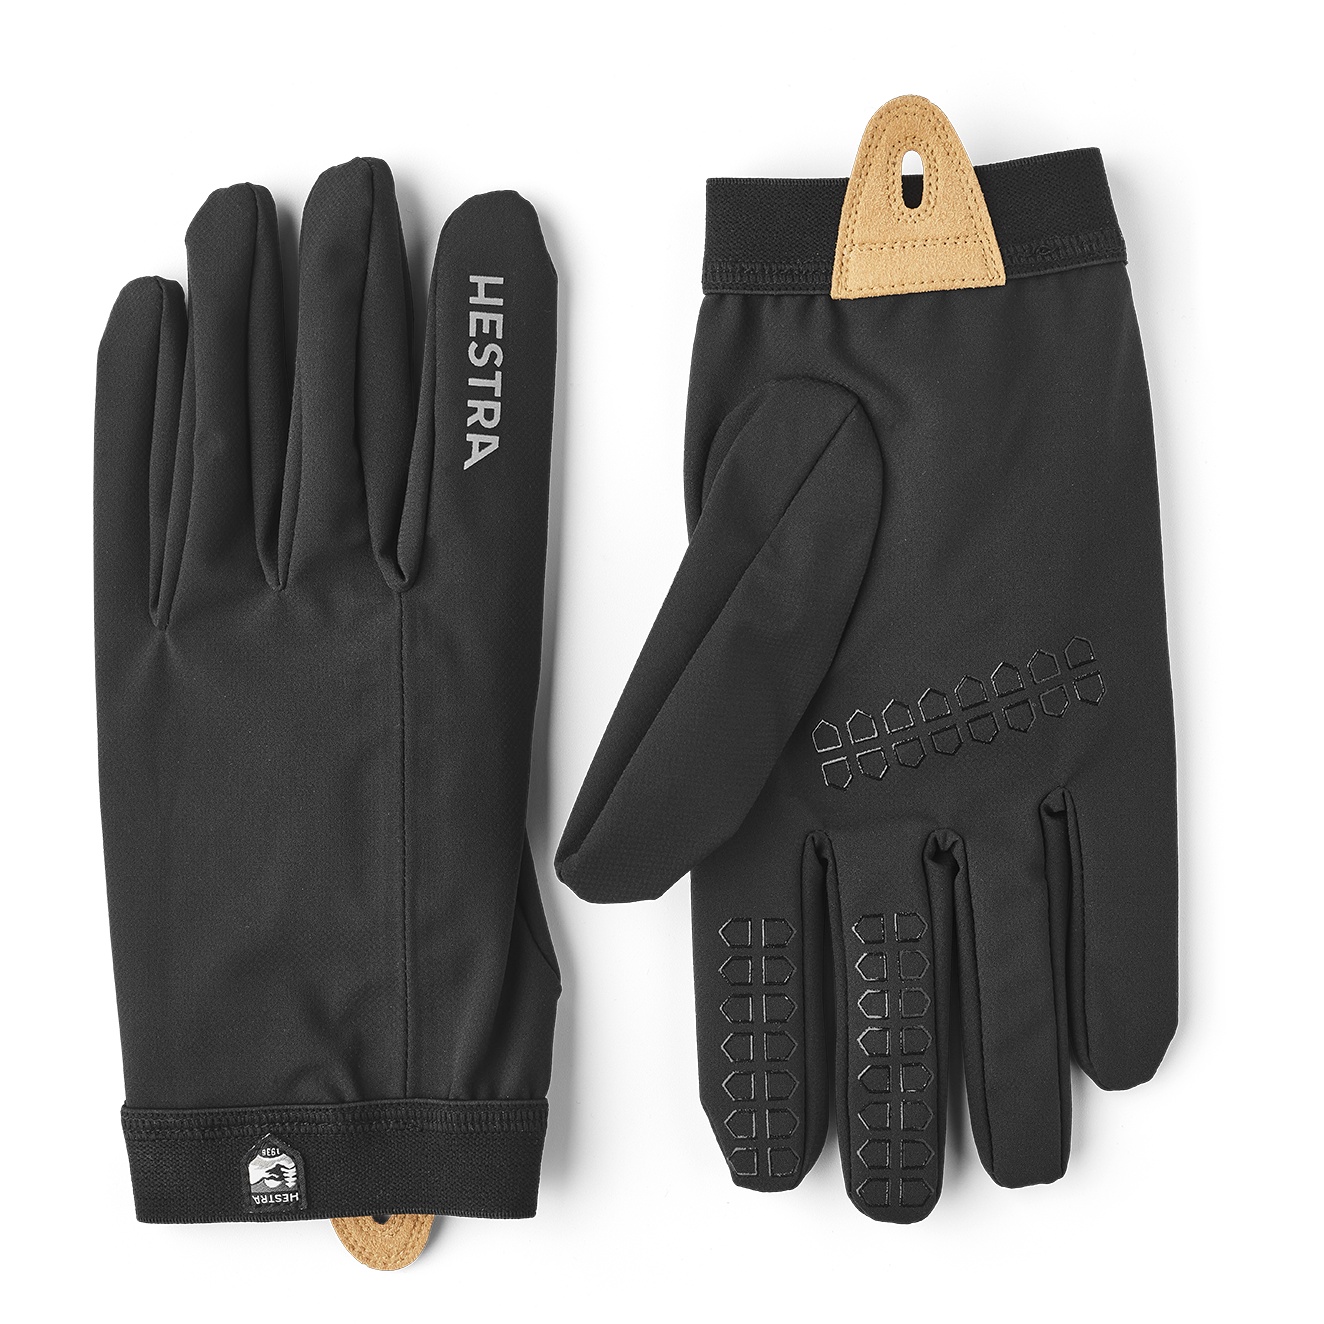 Produktbild von Hestra Nimbus - 5 Finger Handschuhe - schwarz/schwarz